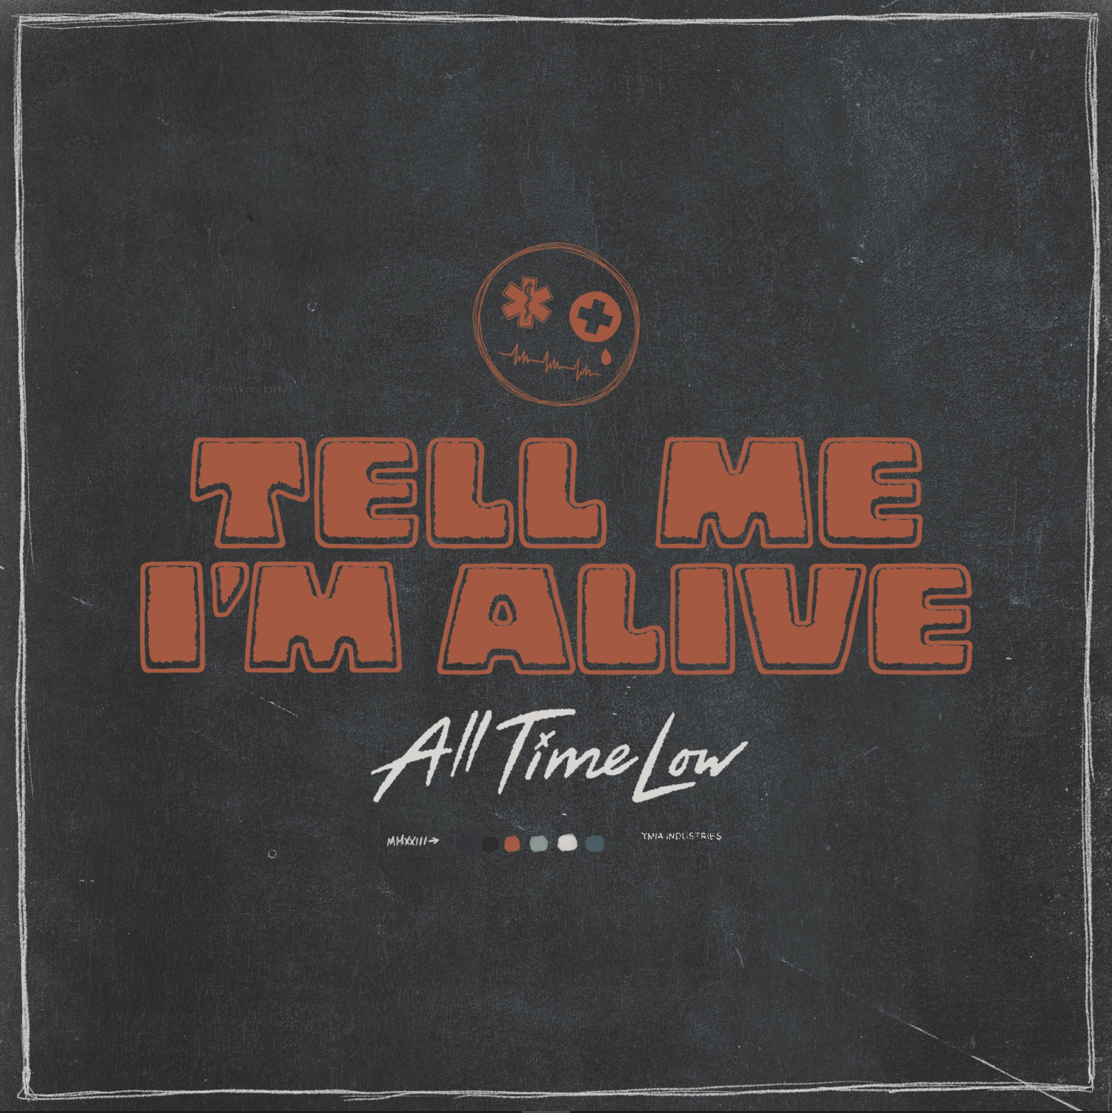 Das Albumcover "Tell Me I'm Alive" von All Time Low ist dunkelgrau mit weißem Rand. In der Mitte stehen Album- und Bandname.